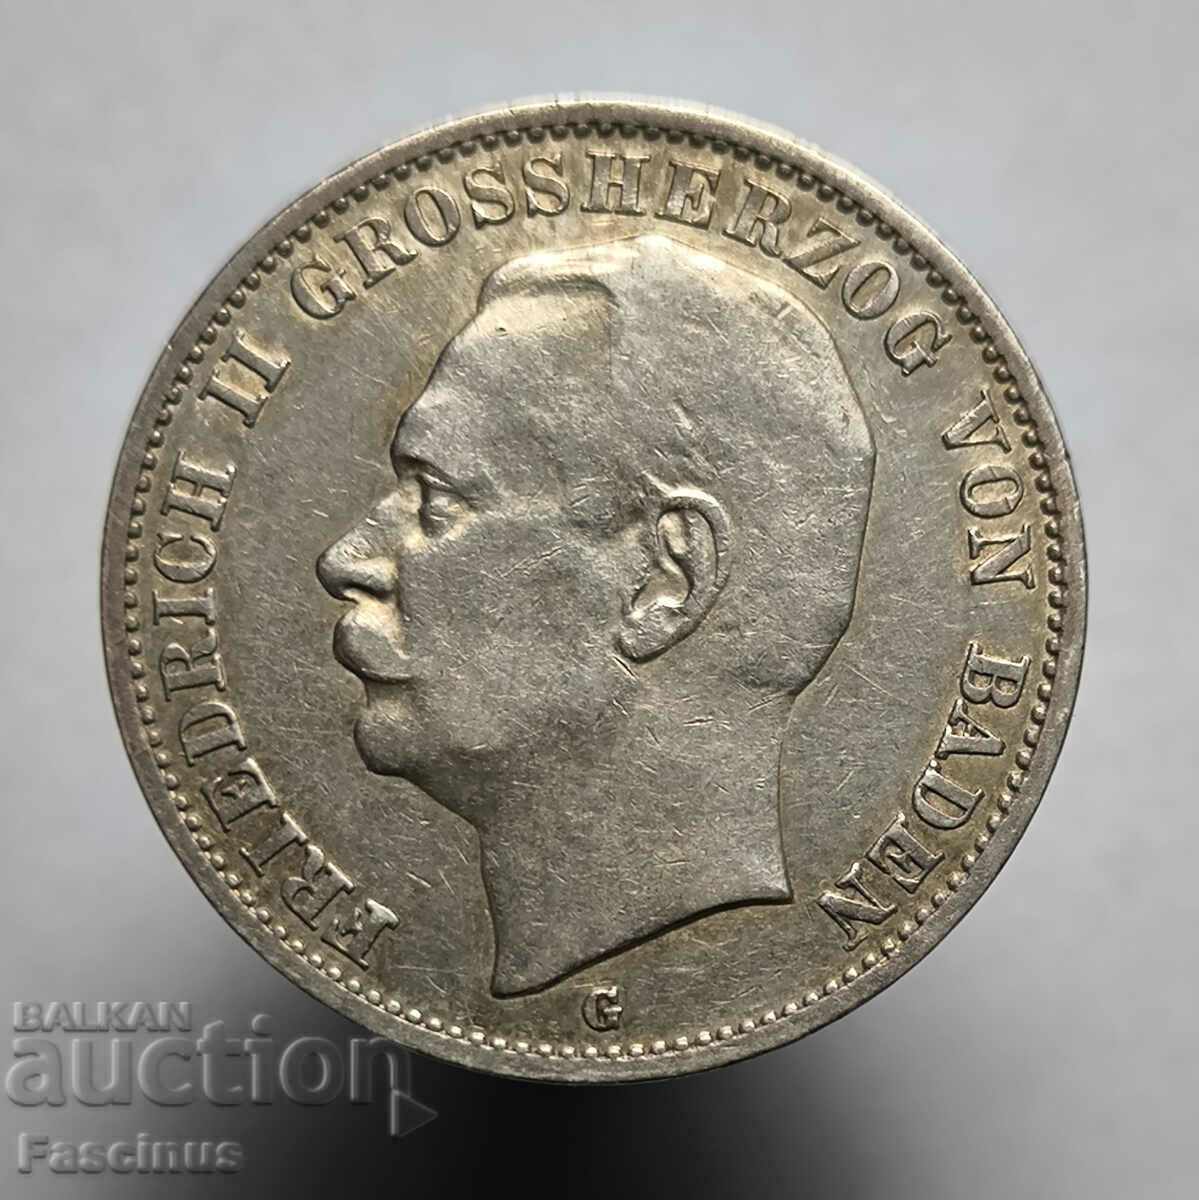 Ασημένιο νόμισμα 3 μάρκες 1911 Μπάντεν Γερμανία